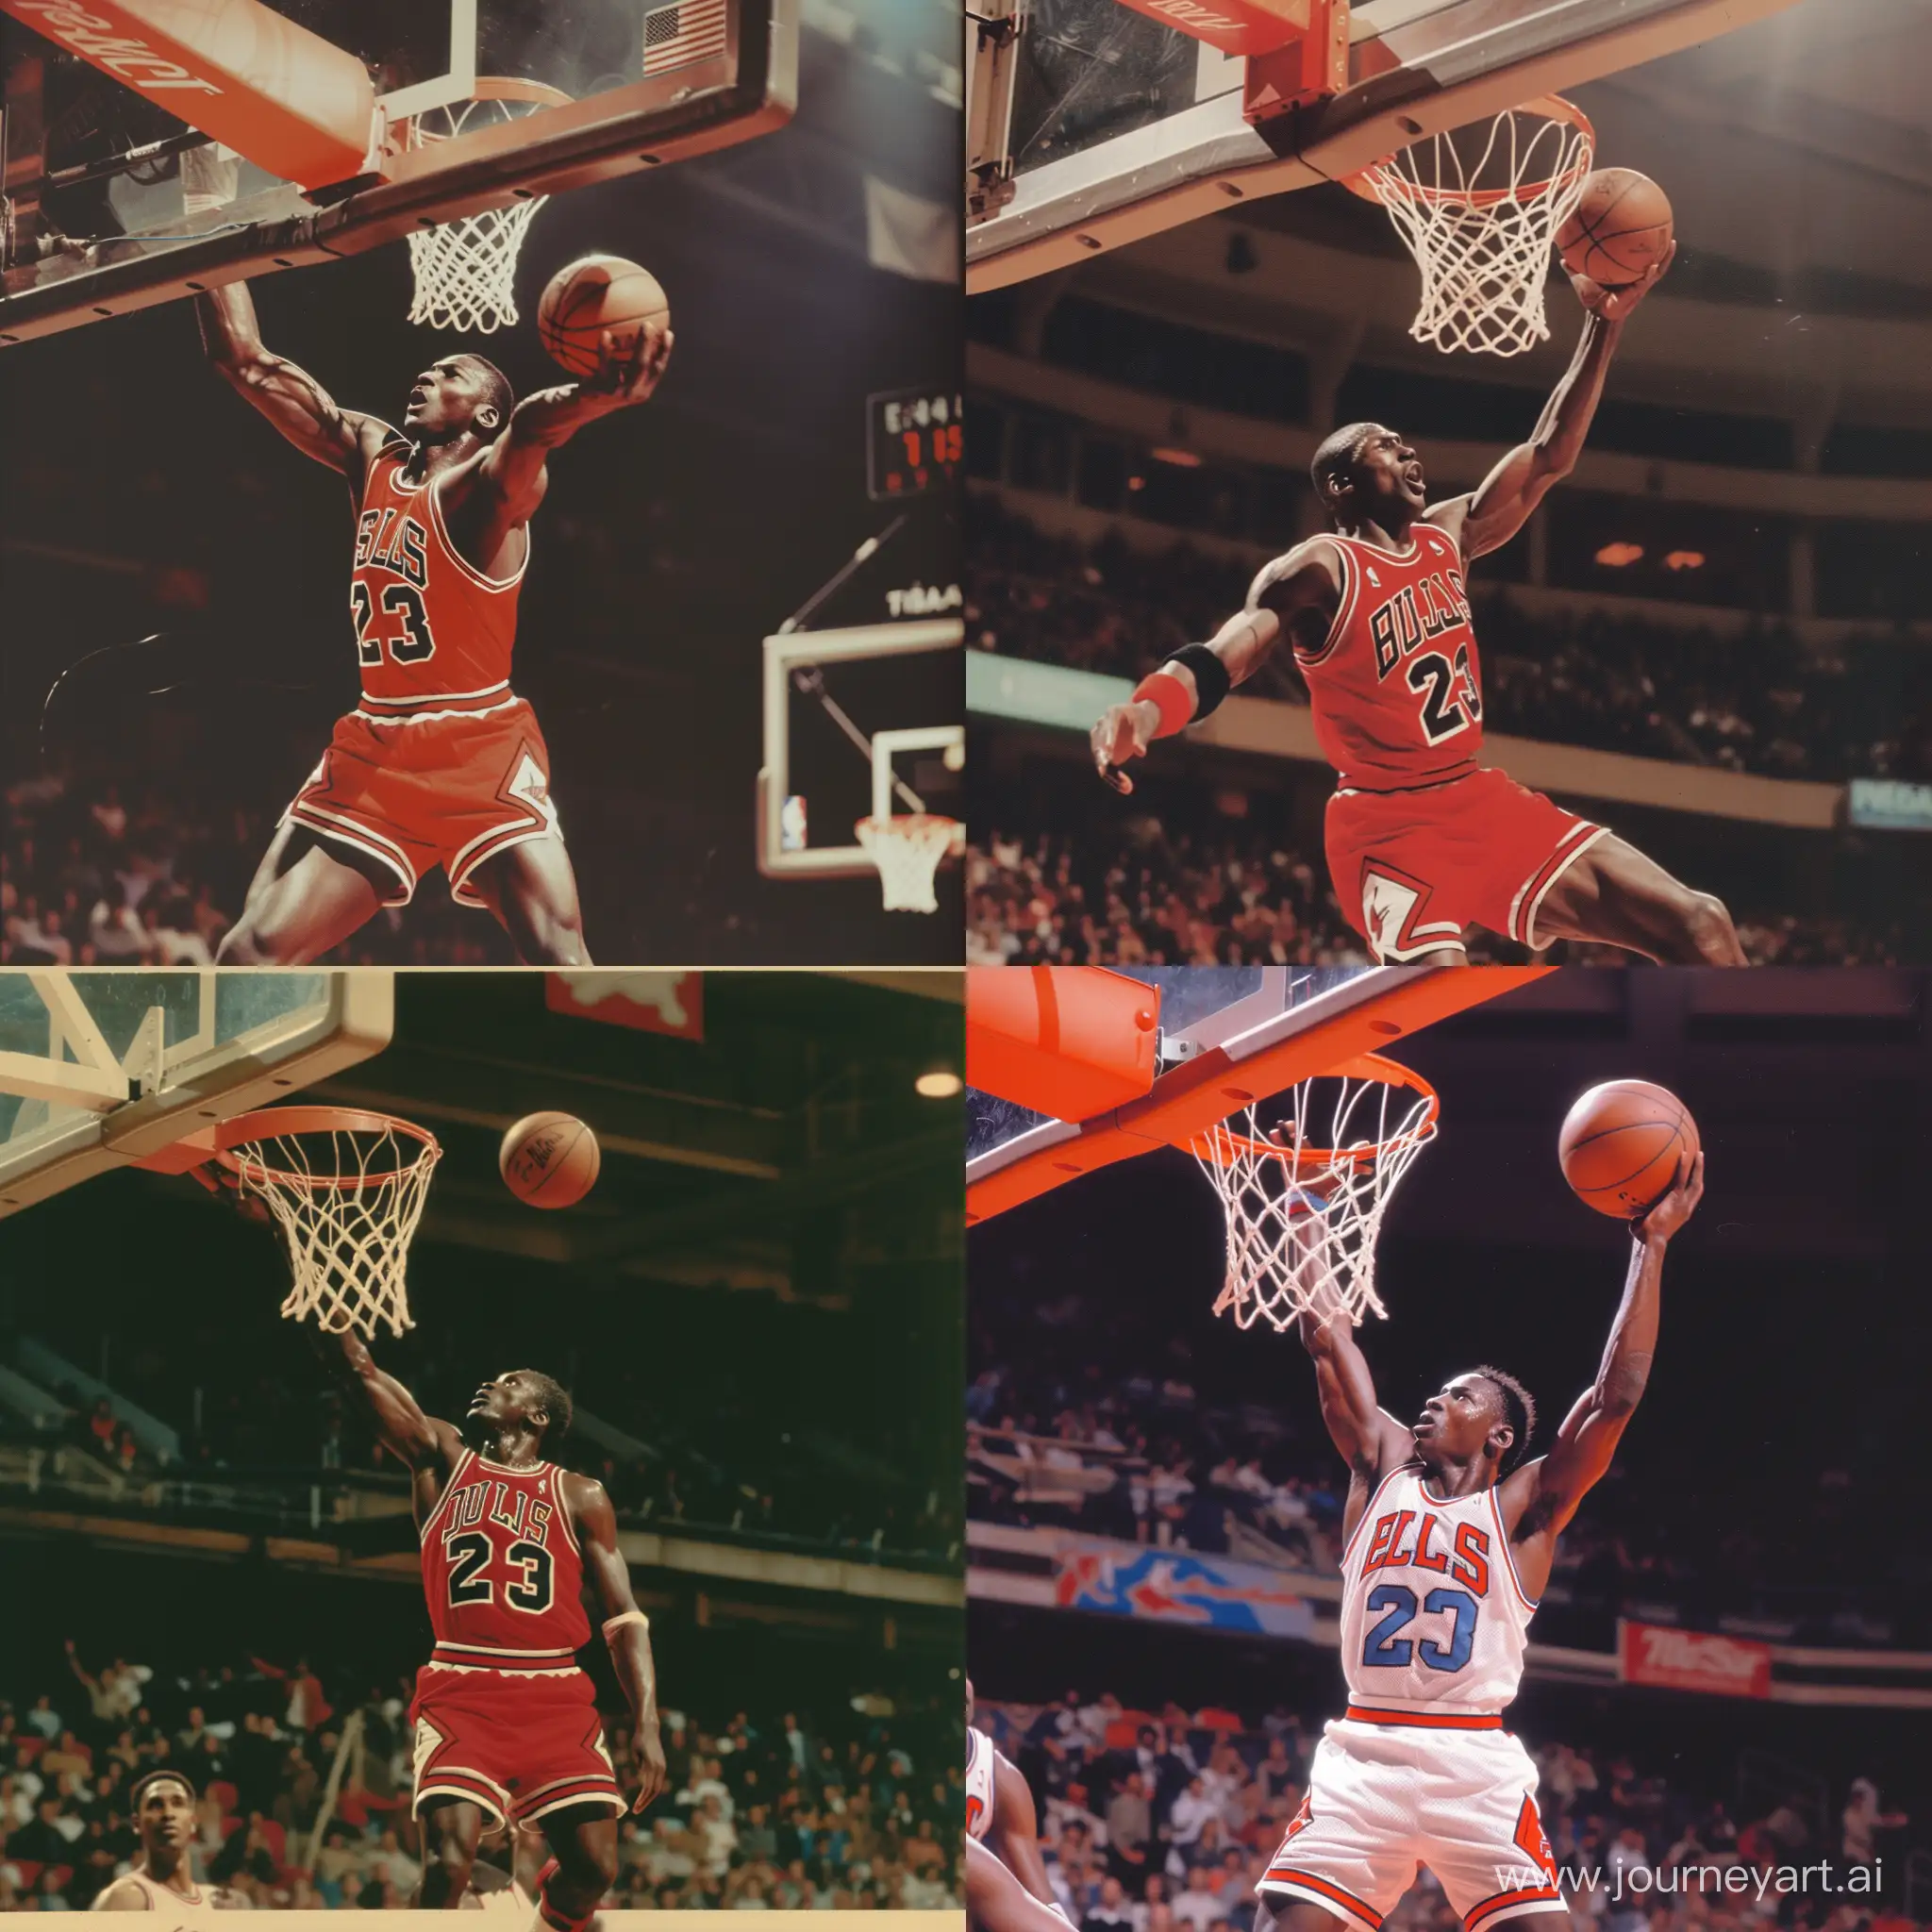 A 1980s photograph of Micheal Jordan dunking